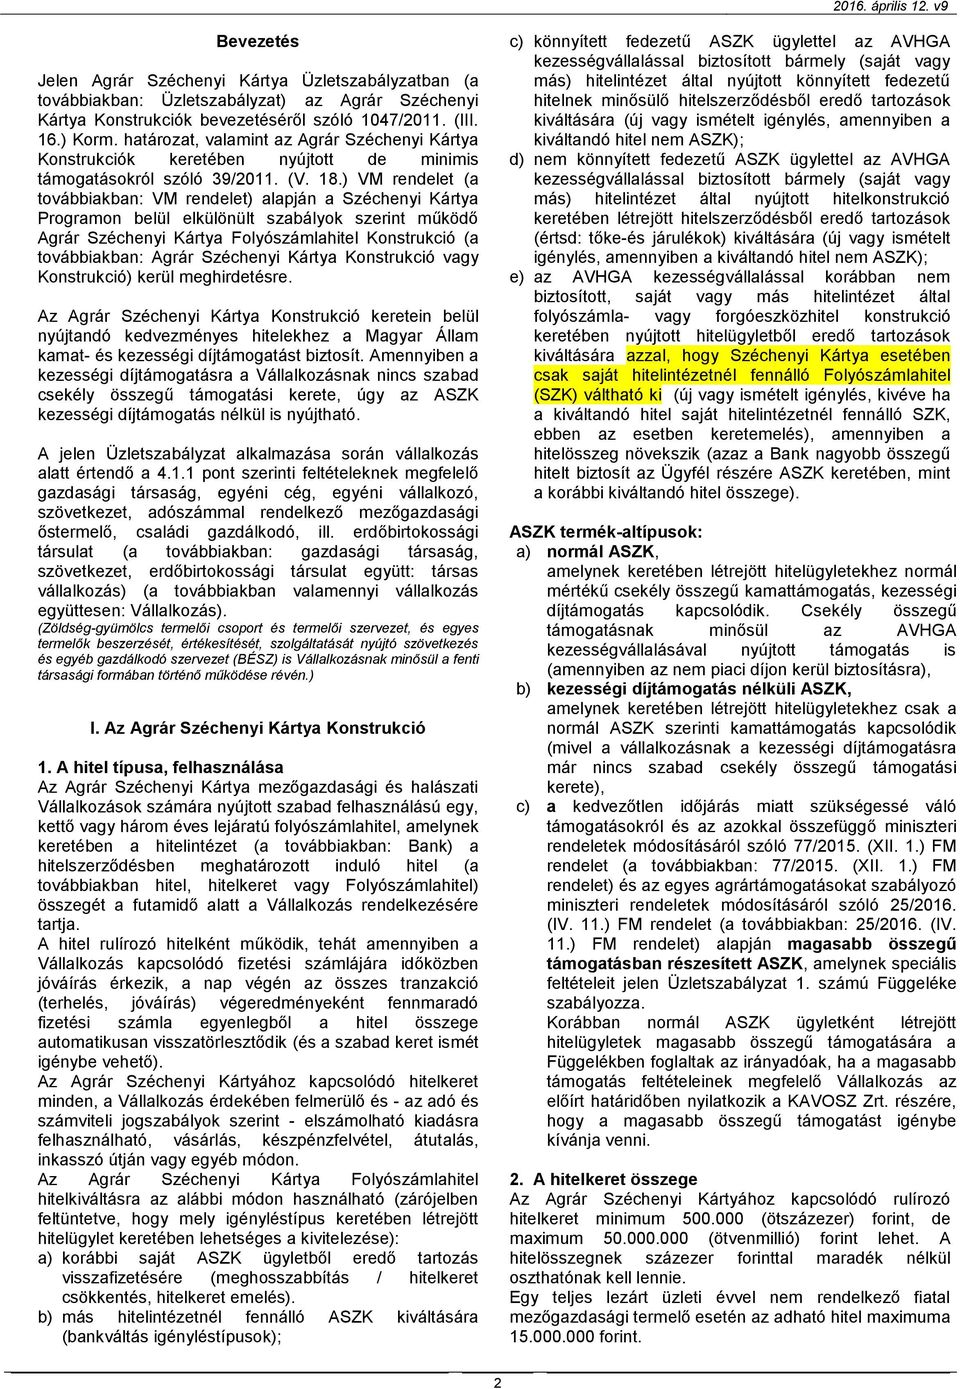 ) VM rendelet (a továbbiakban: VM rendelet) alapján a Széchenyi Kártya Programon belül elkülönült szabályok szerint működő Agrár Széchenyi Kártya Folyószámlahitel Konstrukció (a továbbiakban: Agrár